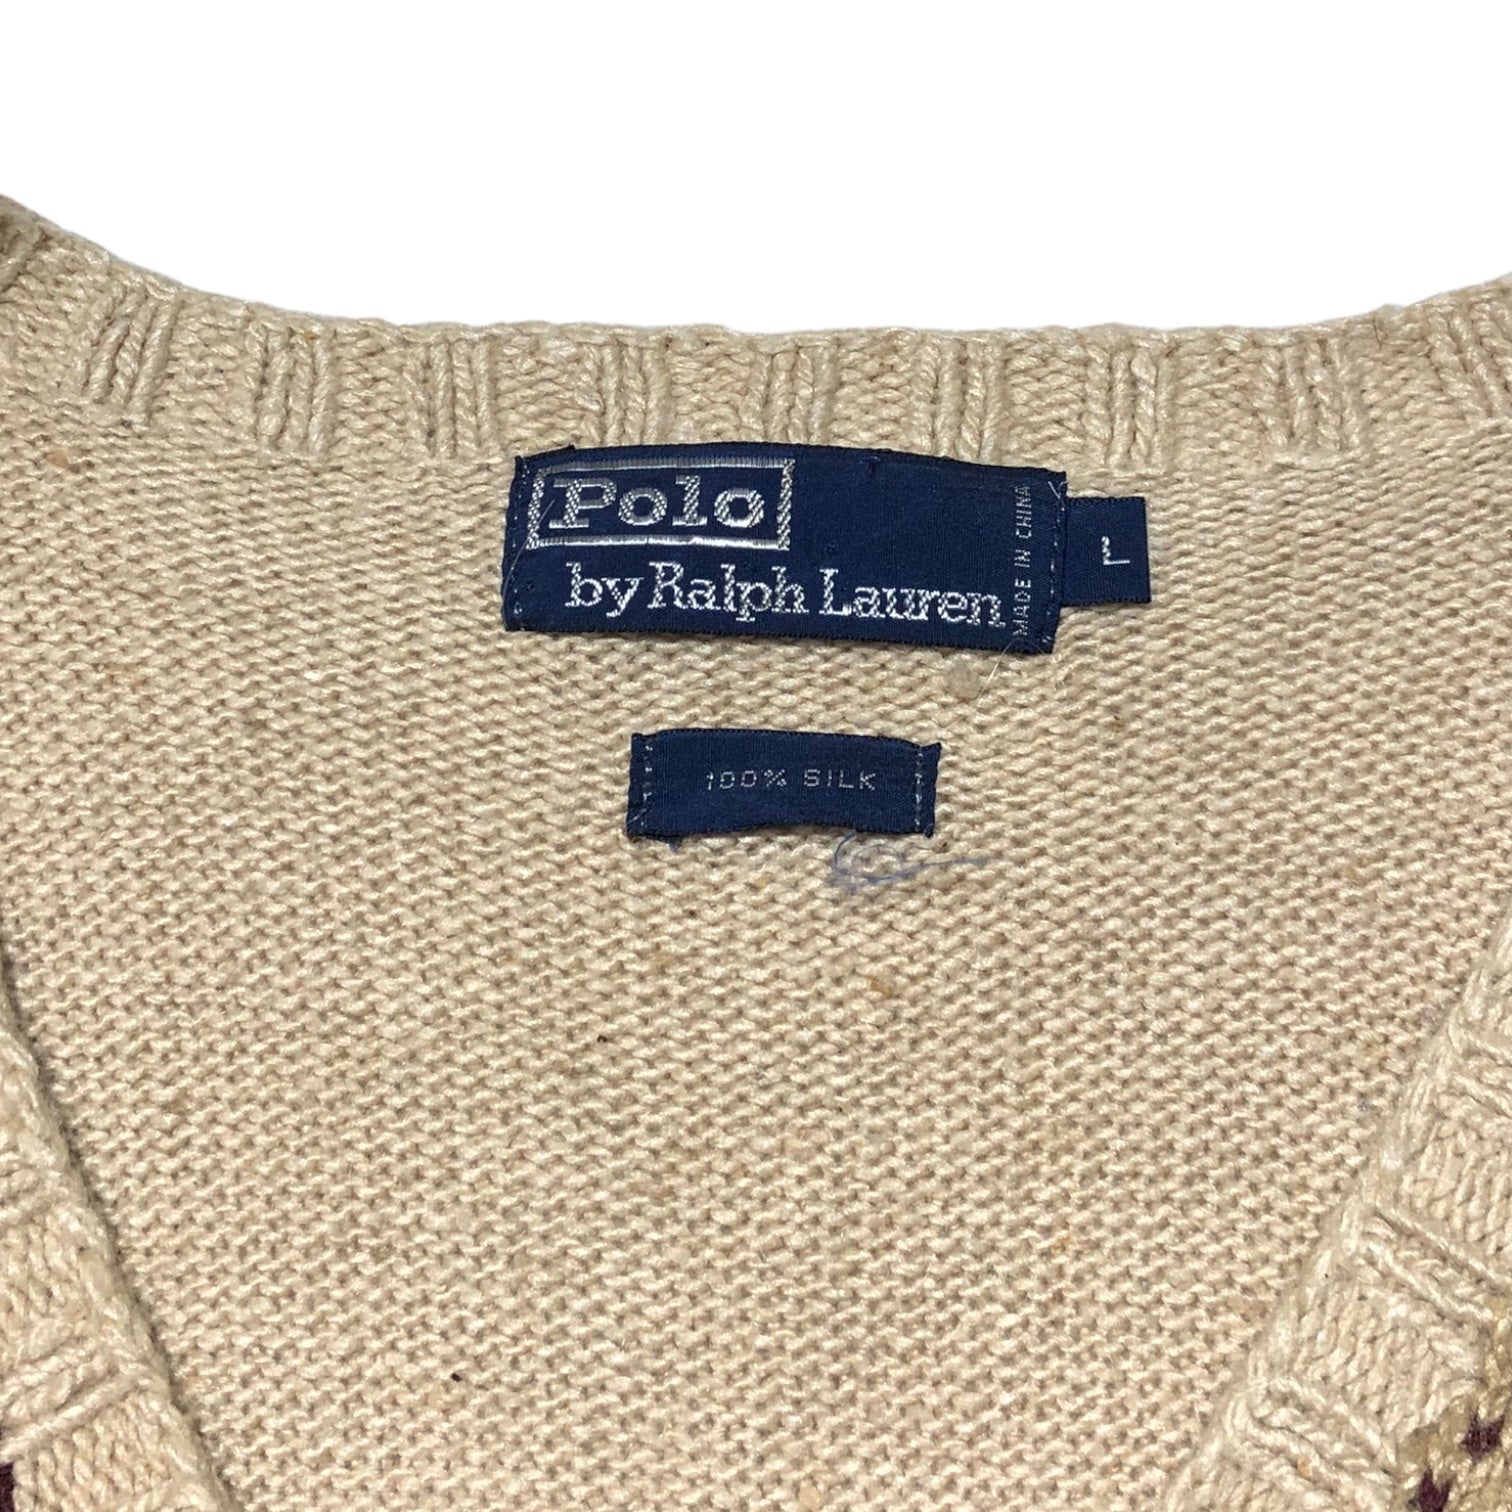 POLO RALPH LAUREN(ポロラルフローレン) All silk argyle knit vest オールシルク アーガイル ニット ベスト L ベージュ ヴィンテージ